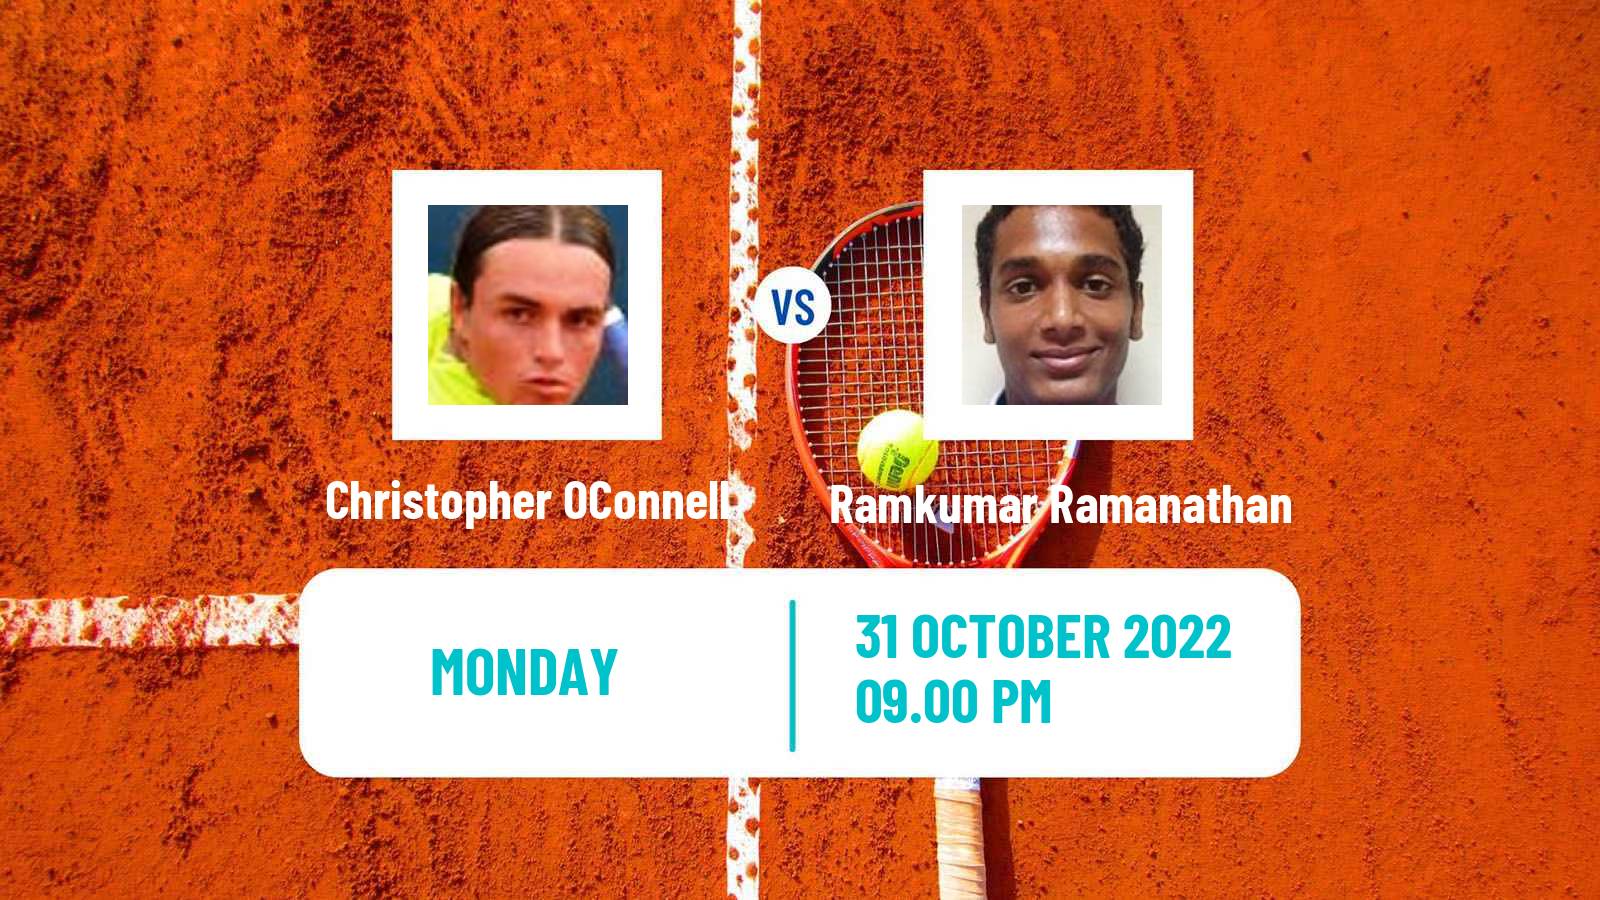 Tennis ATP Challenger Christopher OConnell - Ramkumar Ramanathan